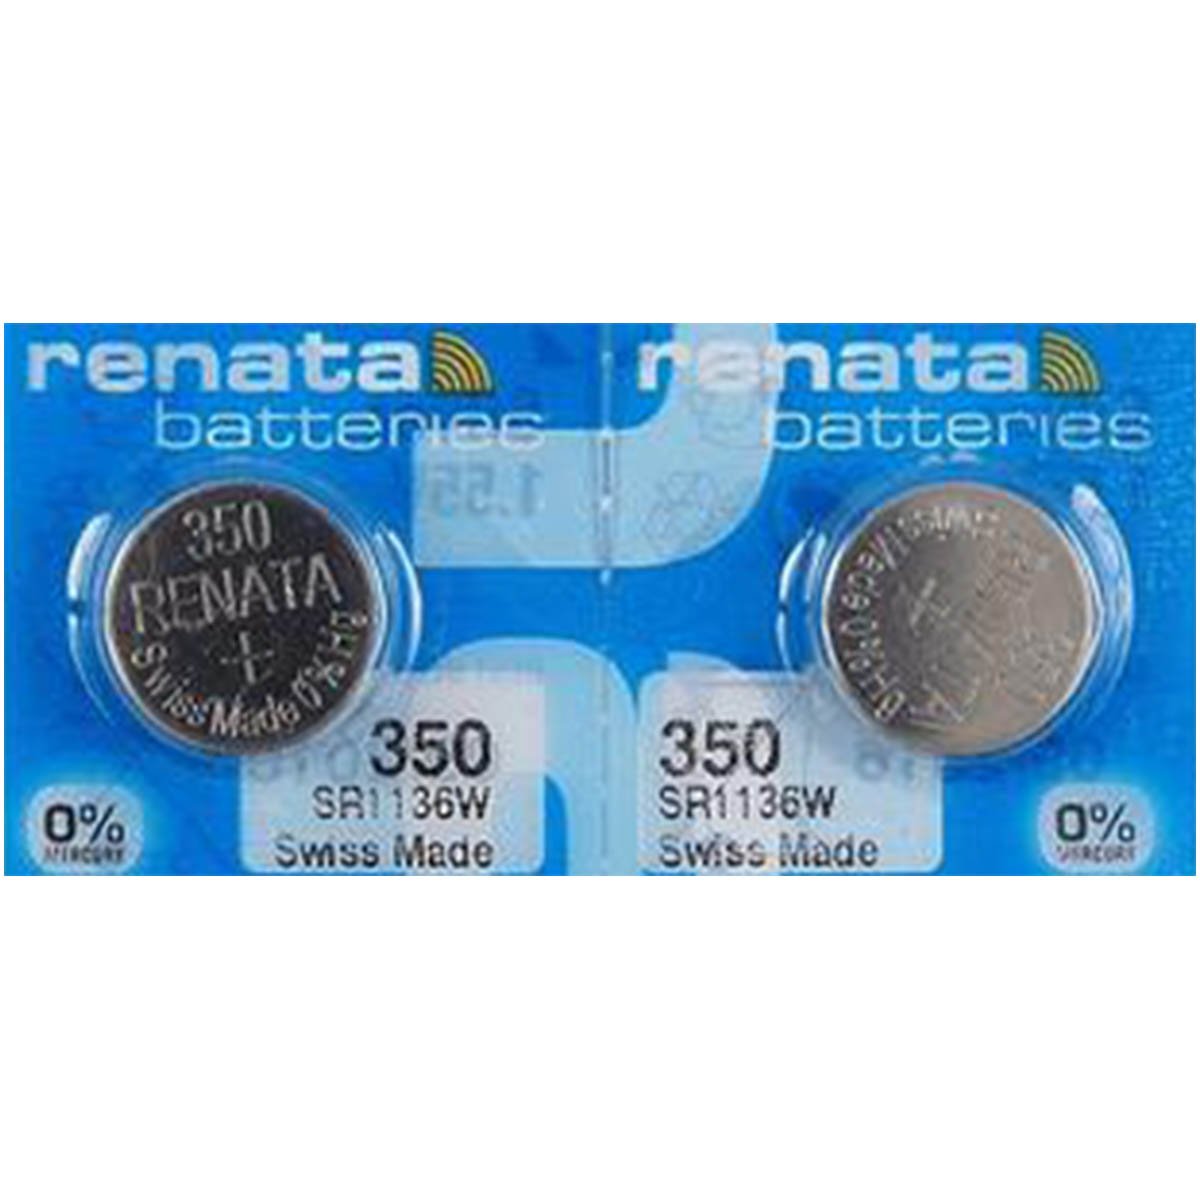 Renata singolo Orologio Batteria SWISS MADE Renata 350 o SR1136SW 1.55 V SPEDIZIONE VELOCE 